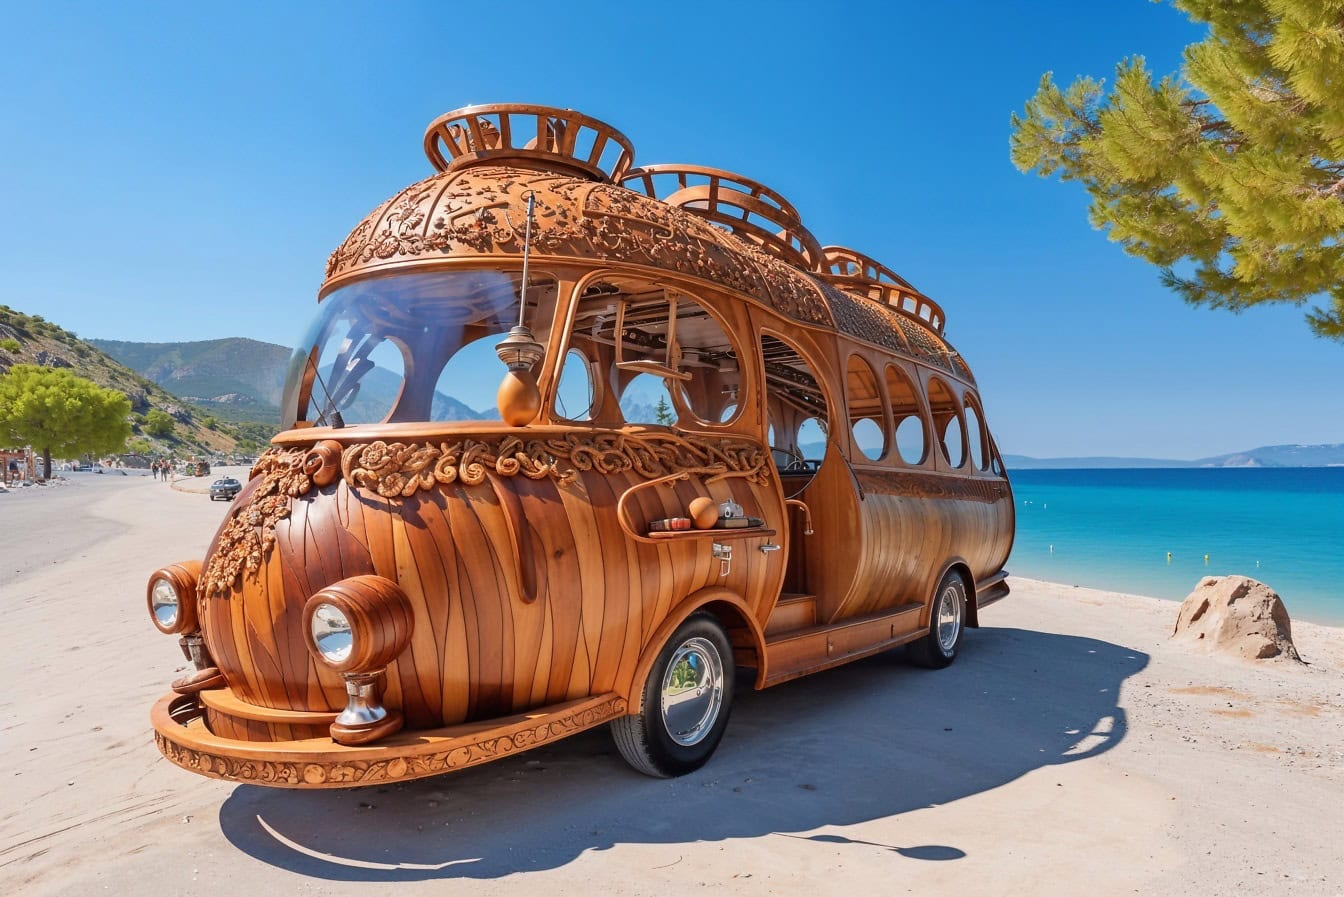 Un camper in legno in stile hippie su una spiaggia